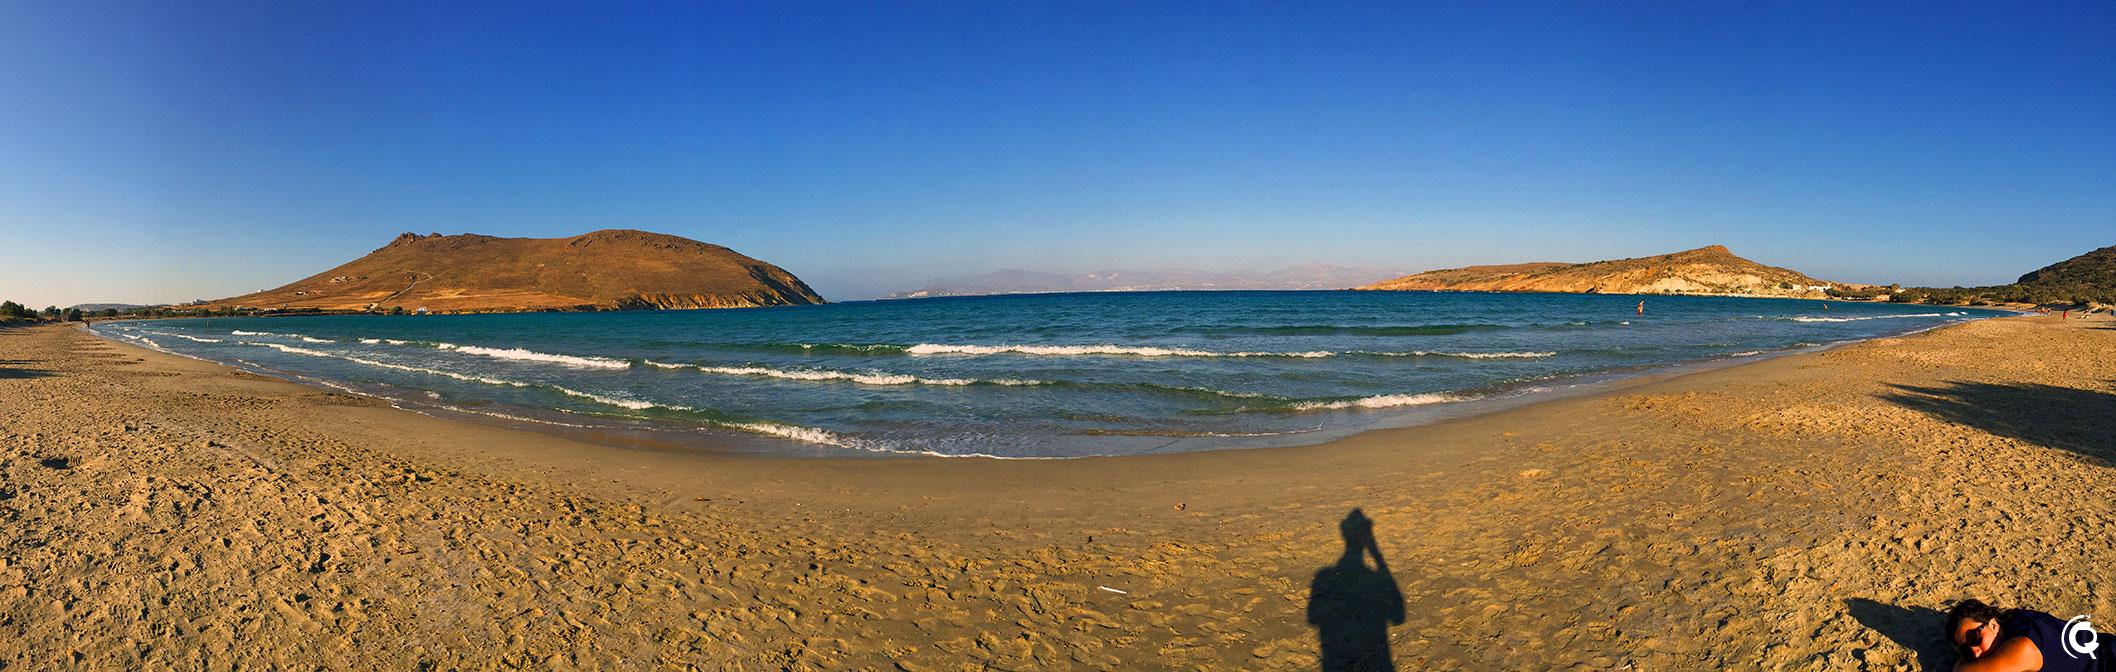 Molos beach